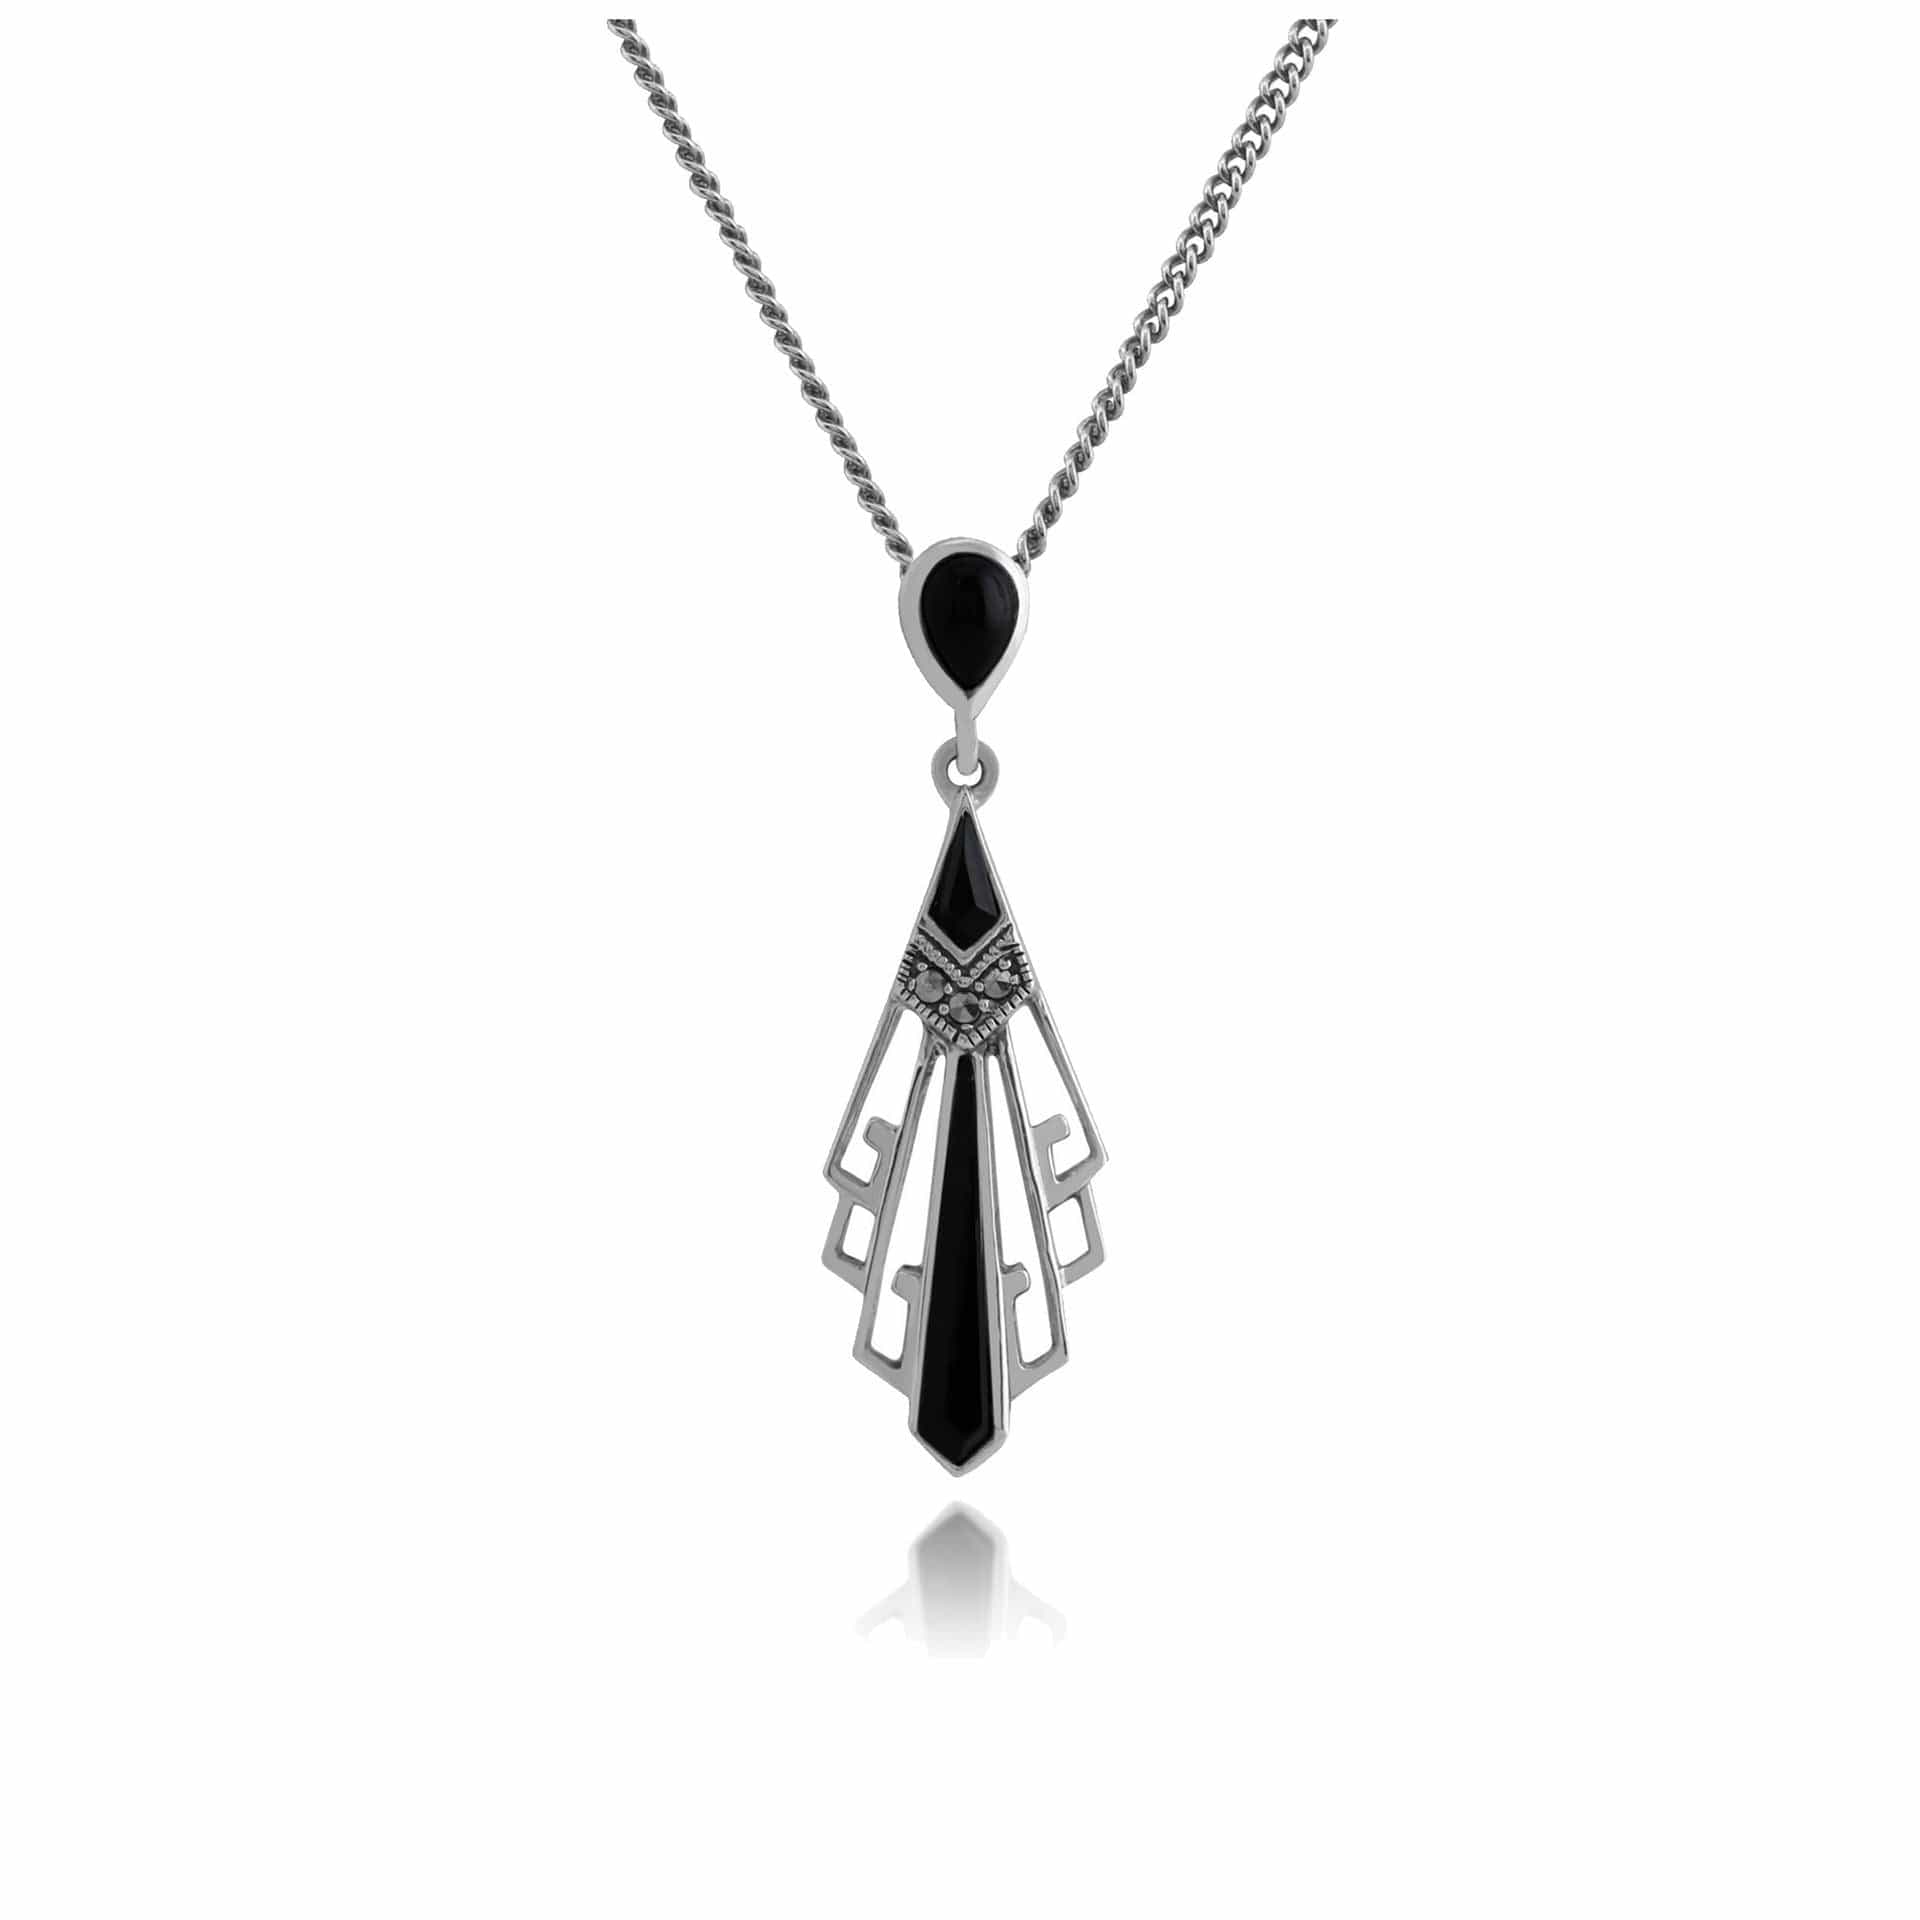 214P295701925 Art Deco Style Black Onyx & Marcasite Open Work Fan Drop Necklace in 925 Sterling Silver 1